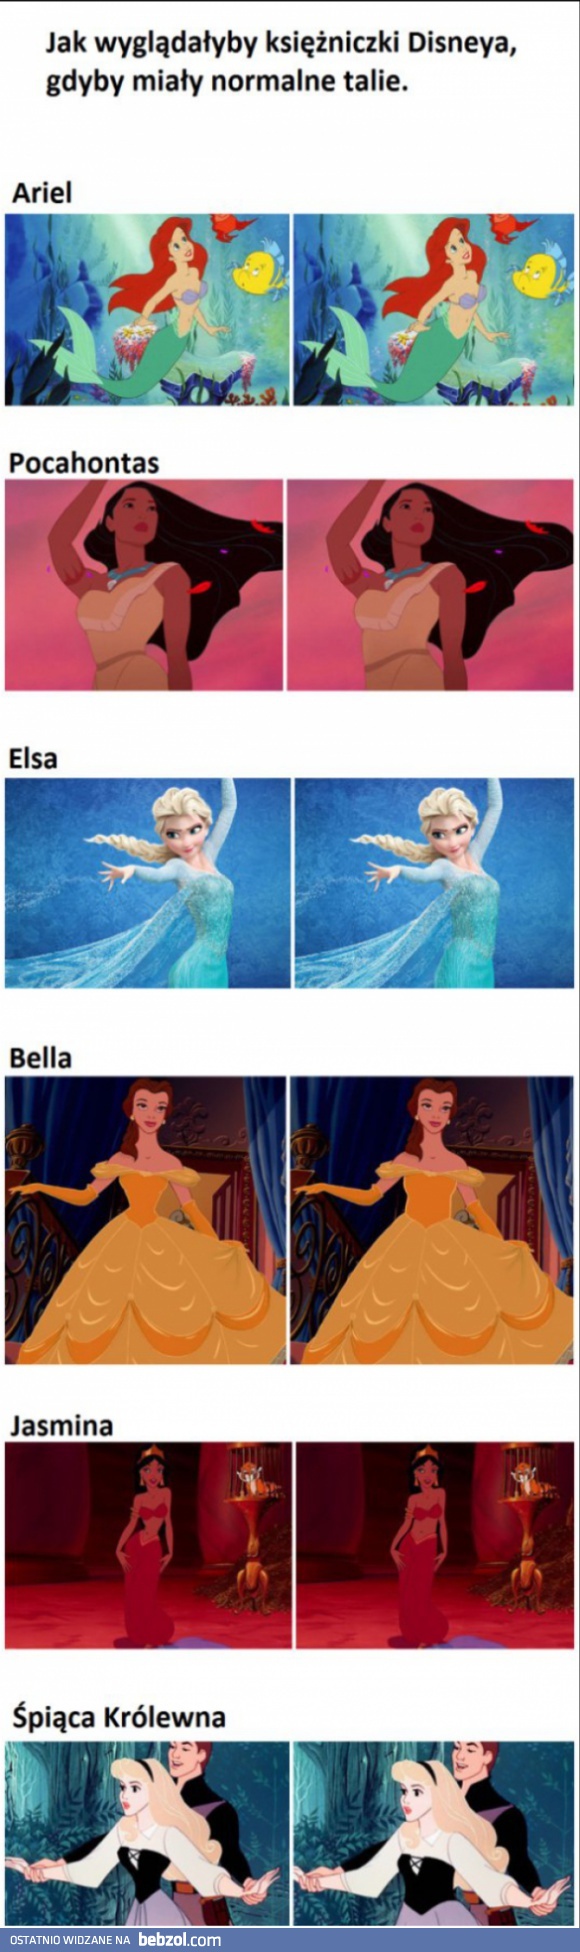 Księżniczki z Disneya